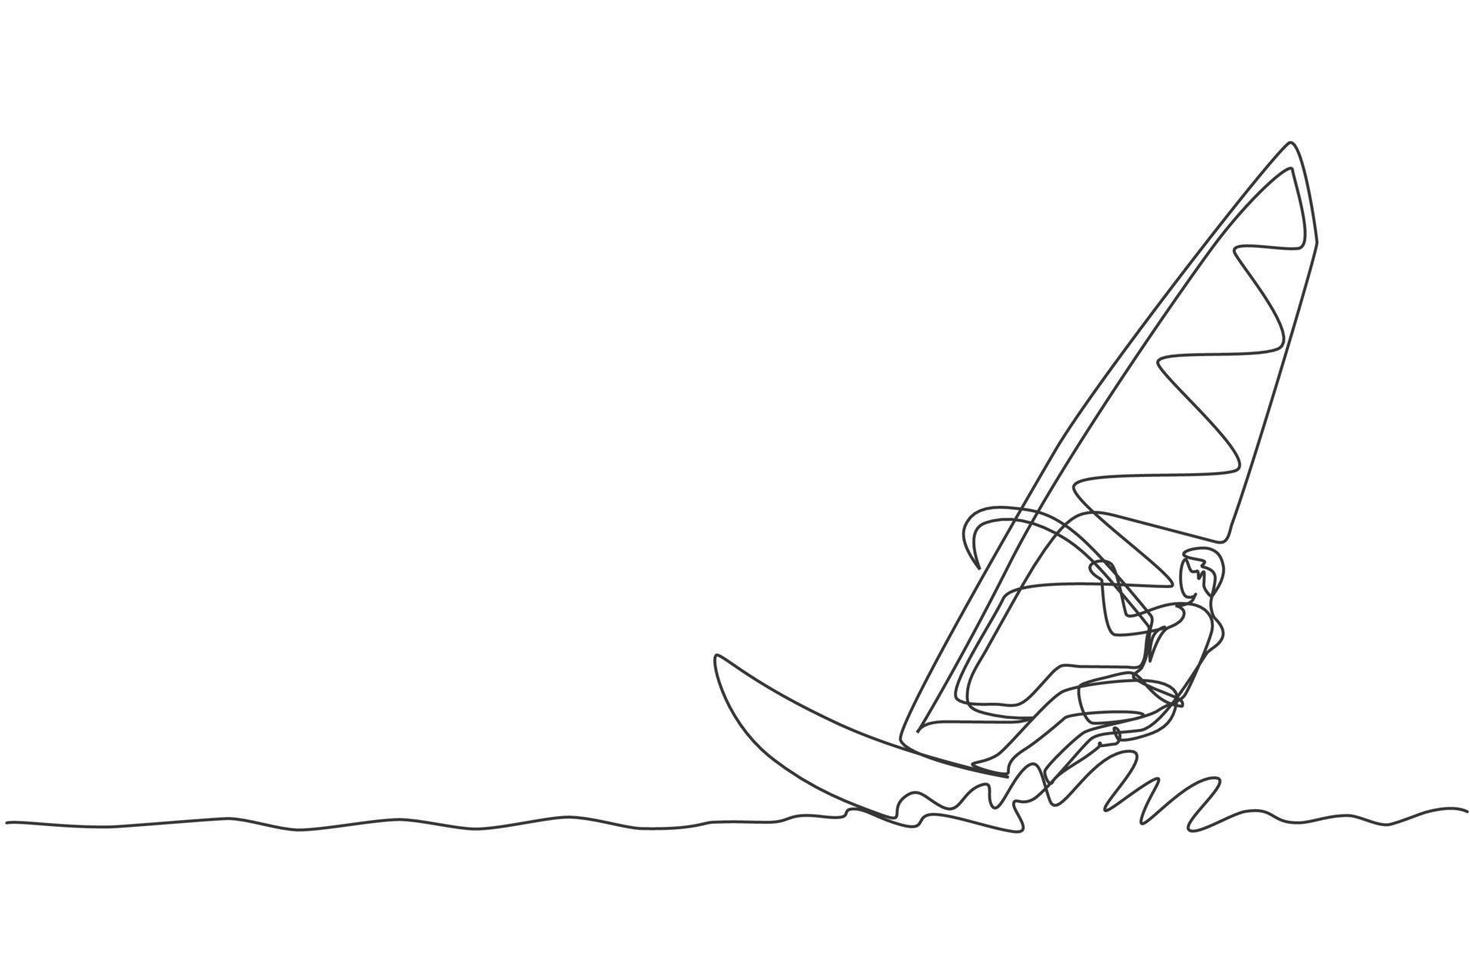 un disegno a linea singola giovane uomo sportivo gioca a windsurf nell'illustrazione grafica vettoriale della spiaggia del mare. stile di vita sano e concetto di sport estremo. vacanze estive. moderno disegno a linea continua